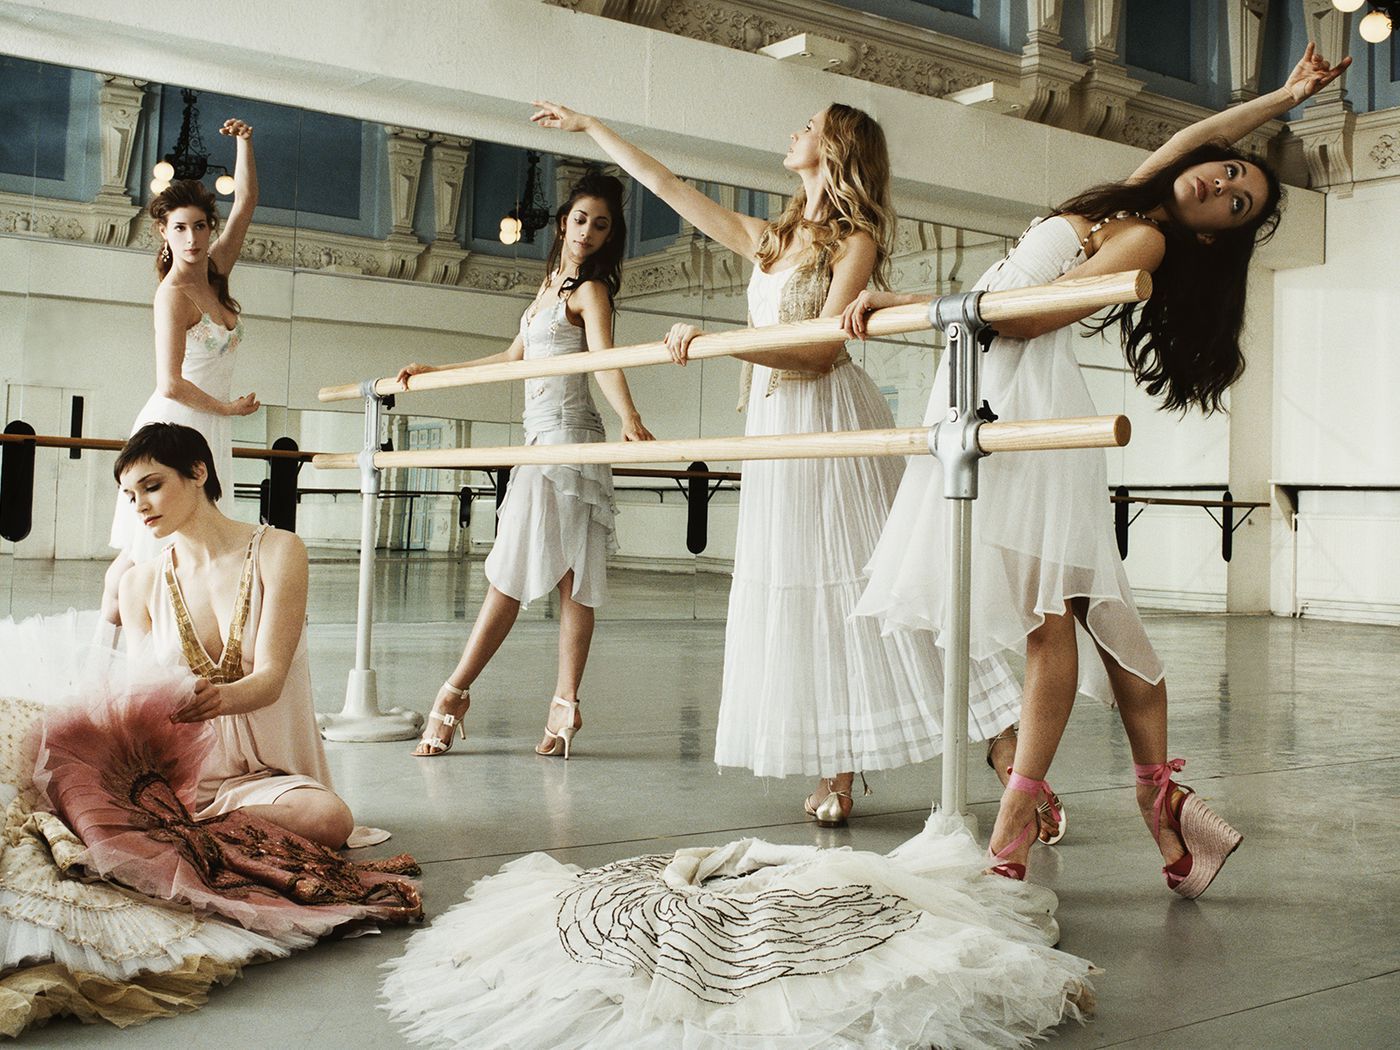 Five women in ballerina costumes posing in a dance studio. - Ballet